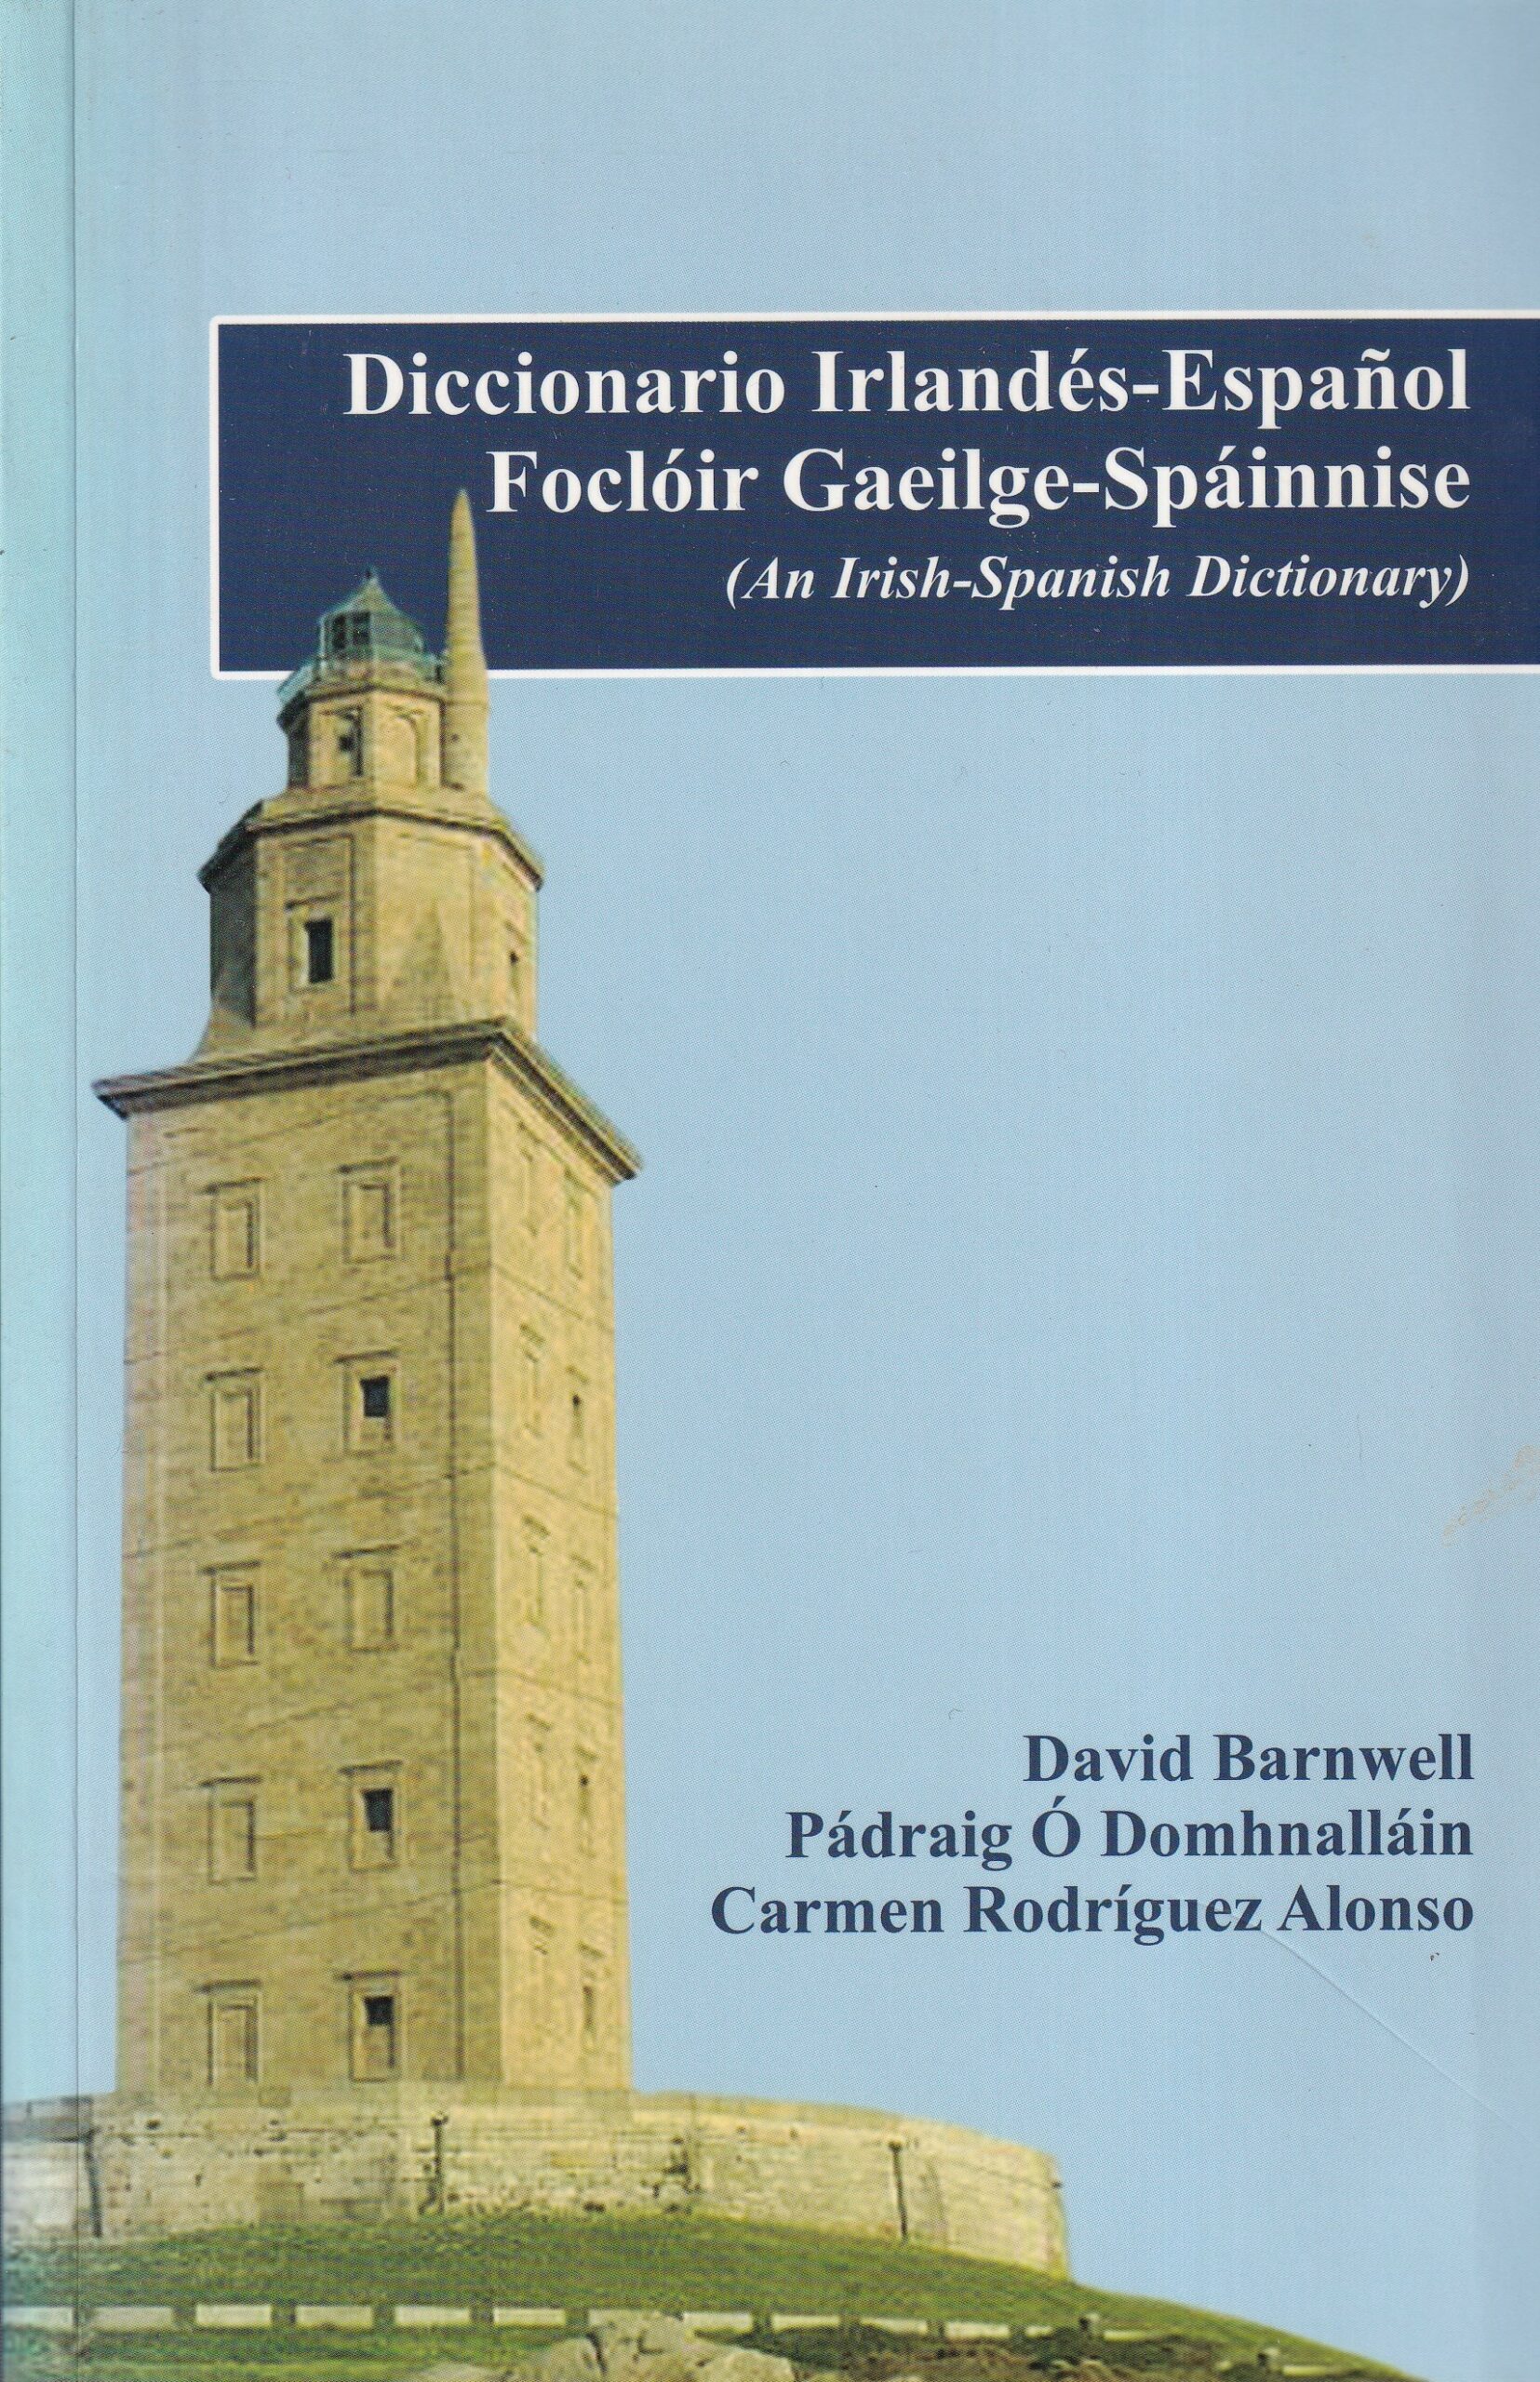 Diccionario Irlandés- Español/ Focloir Gaeilge- Spáinnise (An Irish- Spanish Dictionary) by David Barnwell, Pádraig Ó Domhnalláin and Carmen Rodríguez Alonso